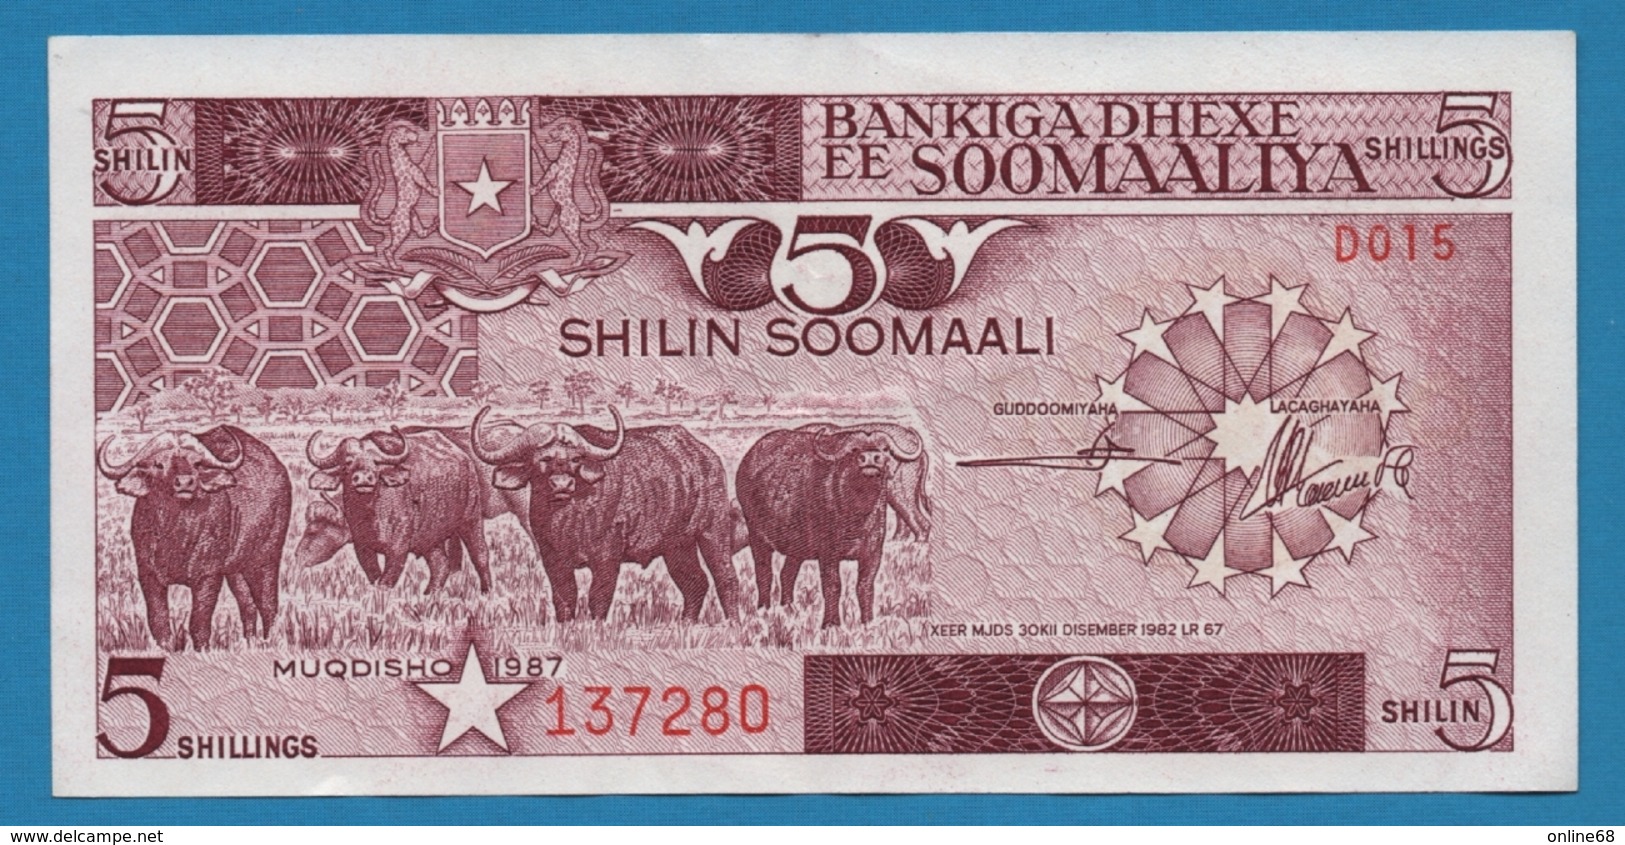 SOMALIA 5 Shilin Soomaali	1987	# D015 137280 P# 31c - Somalie